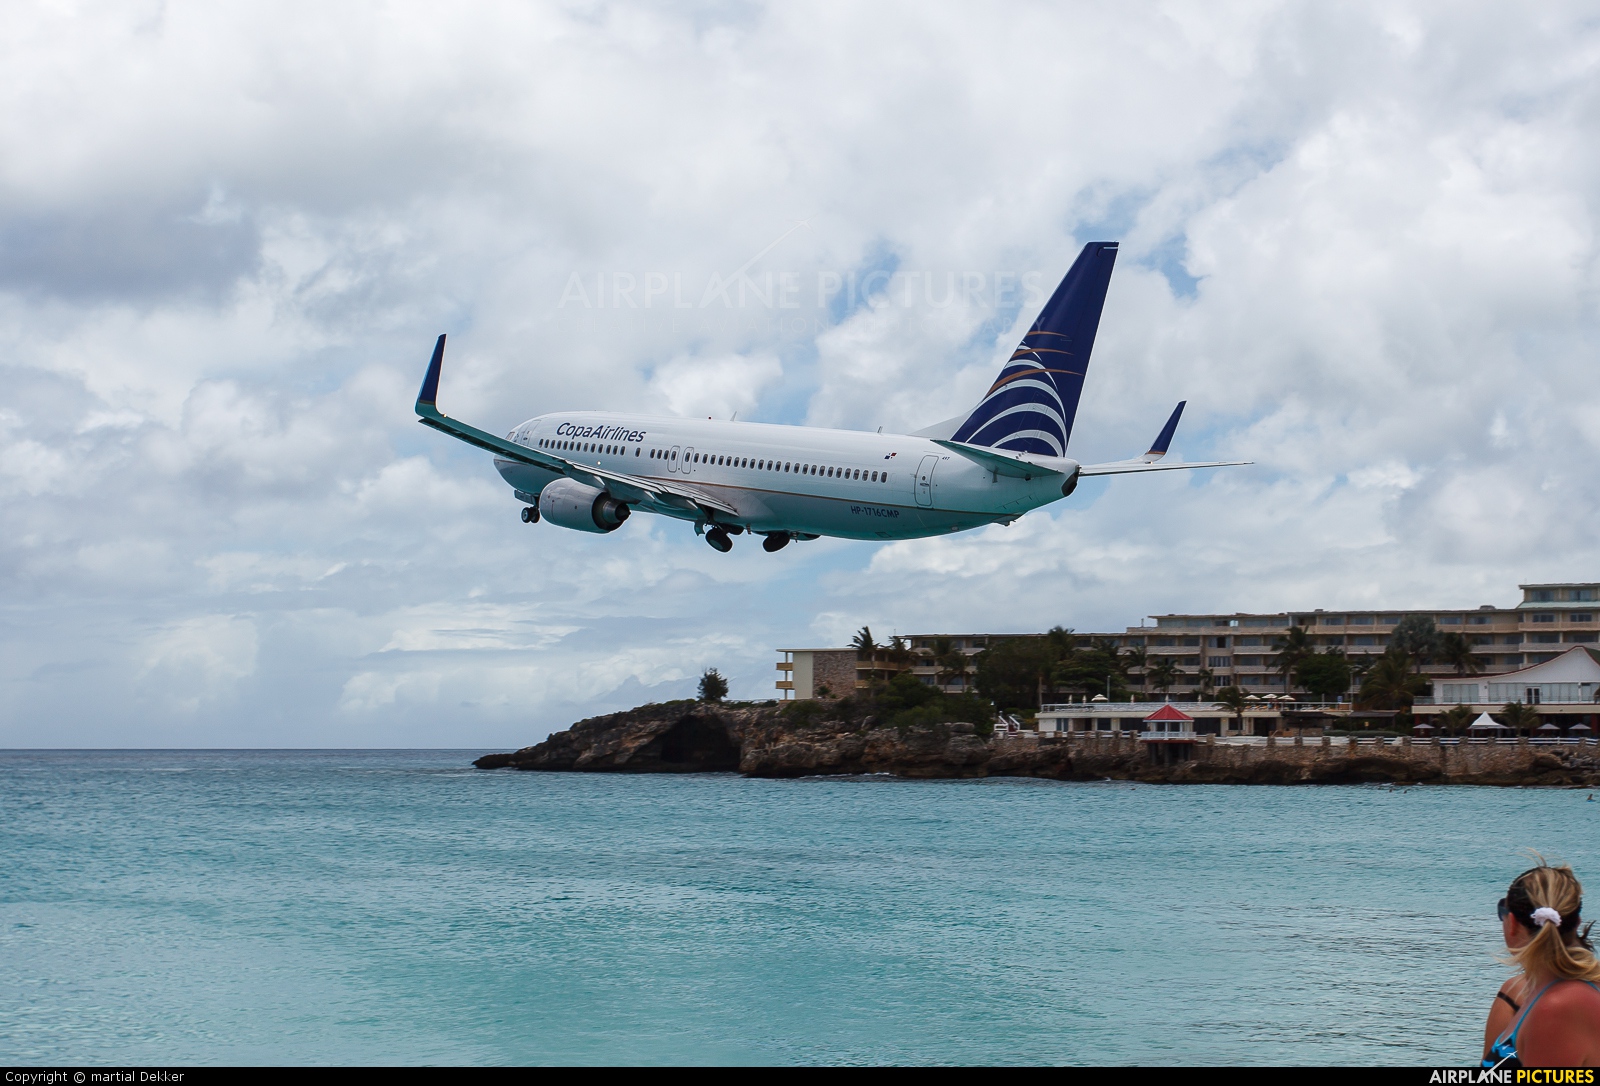 Copa Airlines HP-1716CMP aircraft at Sint Maarten - Princess Juliana Intl